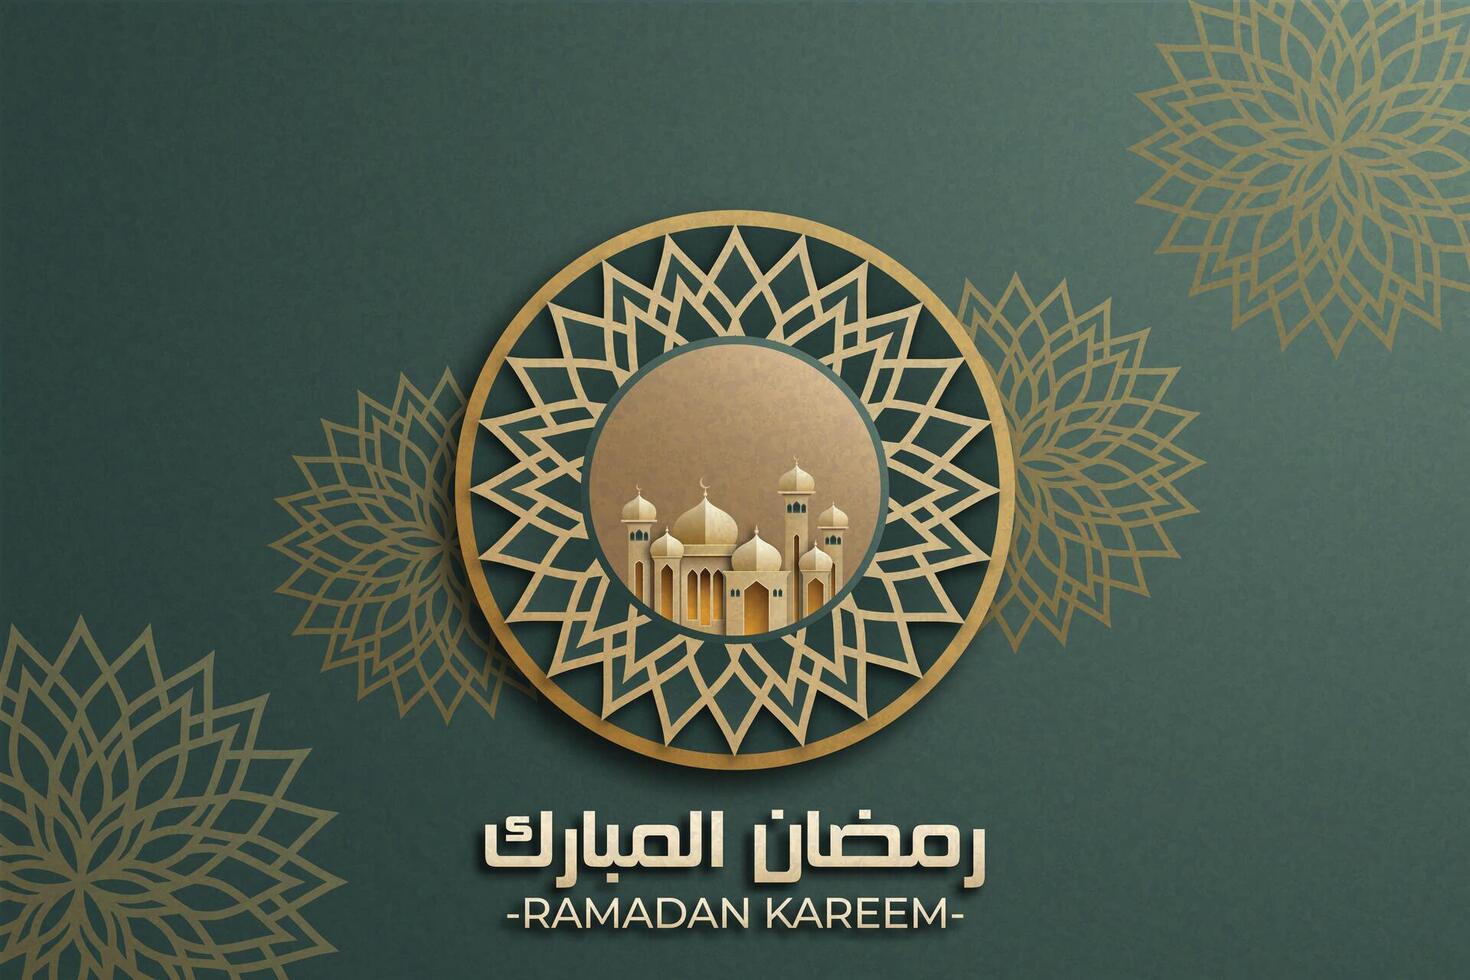 Ramadan mubarak affiche avec une 3d papier découpé conception avec islamique lanternes, mosquée, mandala, et une croissant lune. luxueux vert Couleur à créer un élégant et de fête atmosphère. vecteur